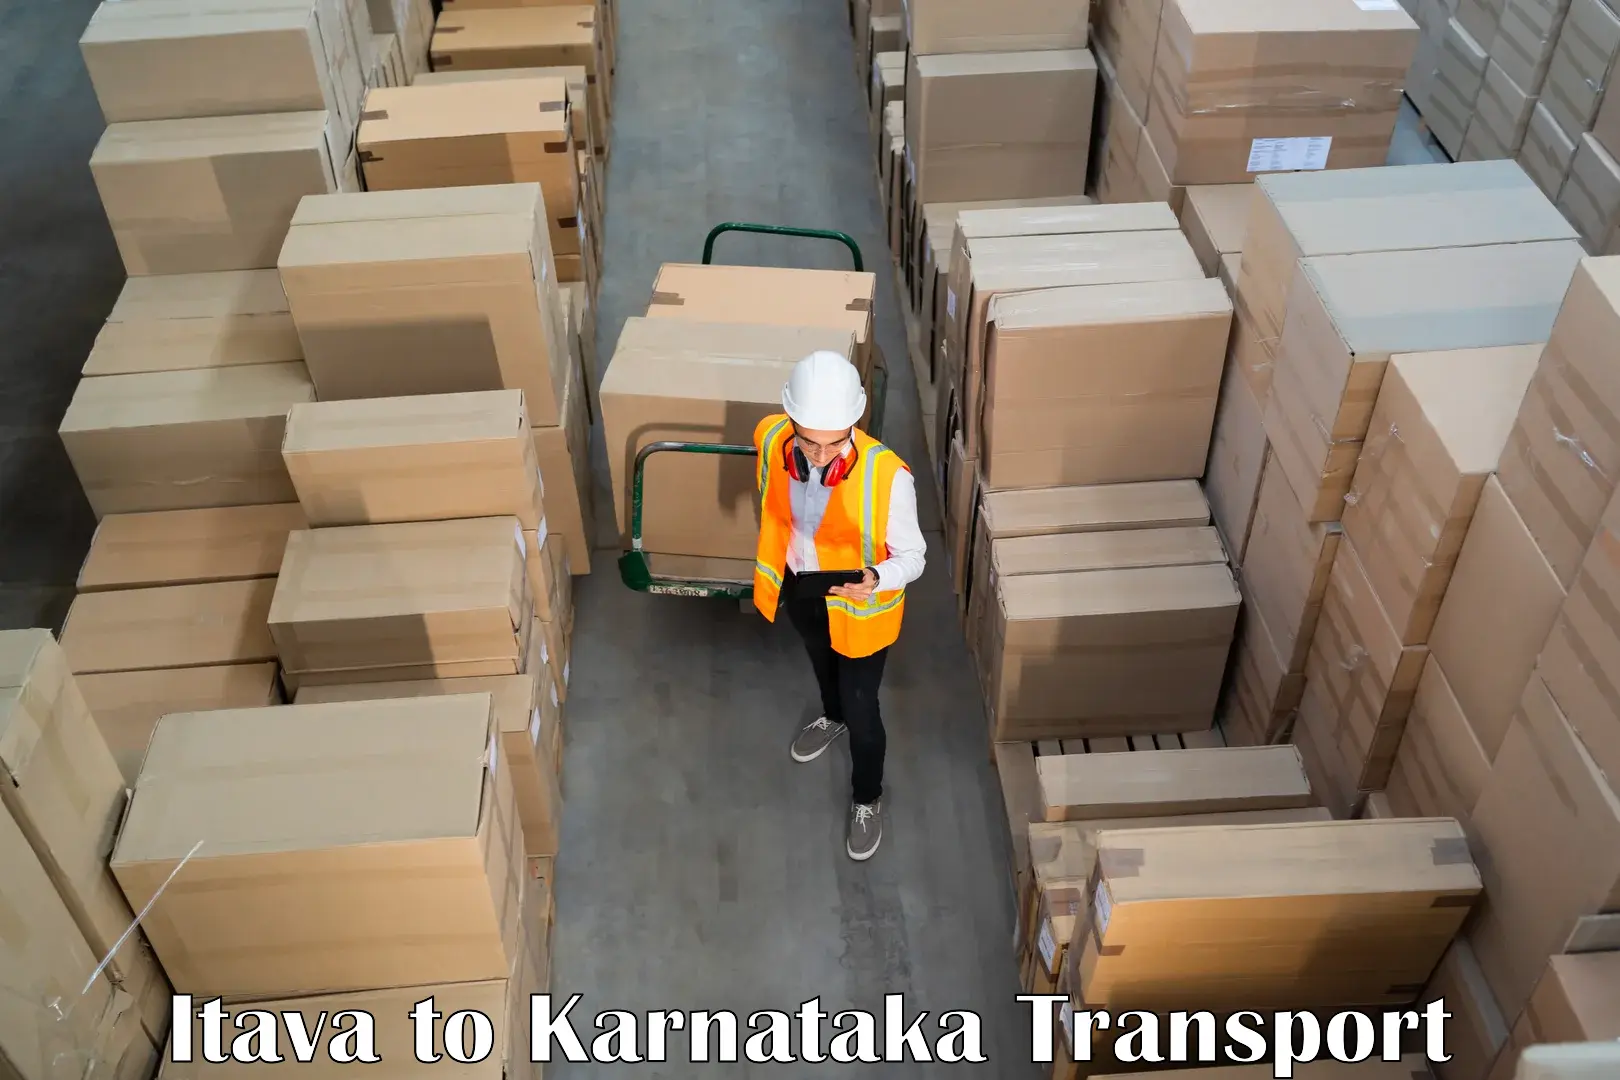 Container transport service Itava to Lingasugur